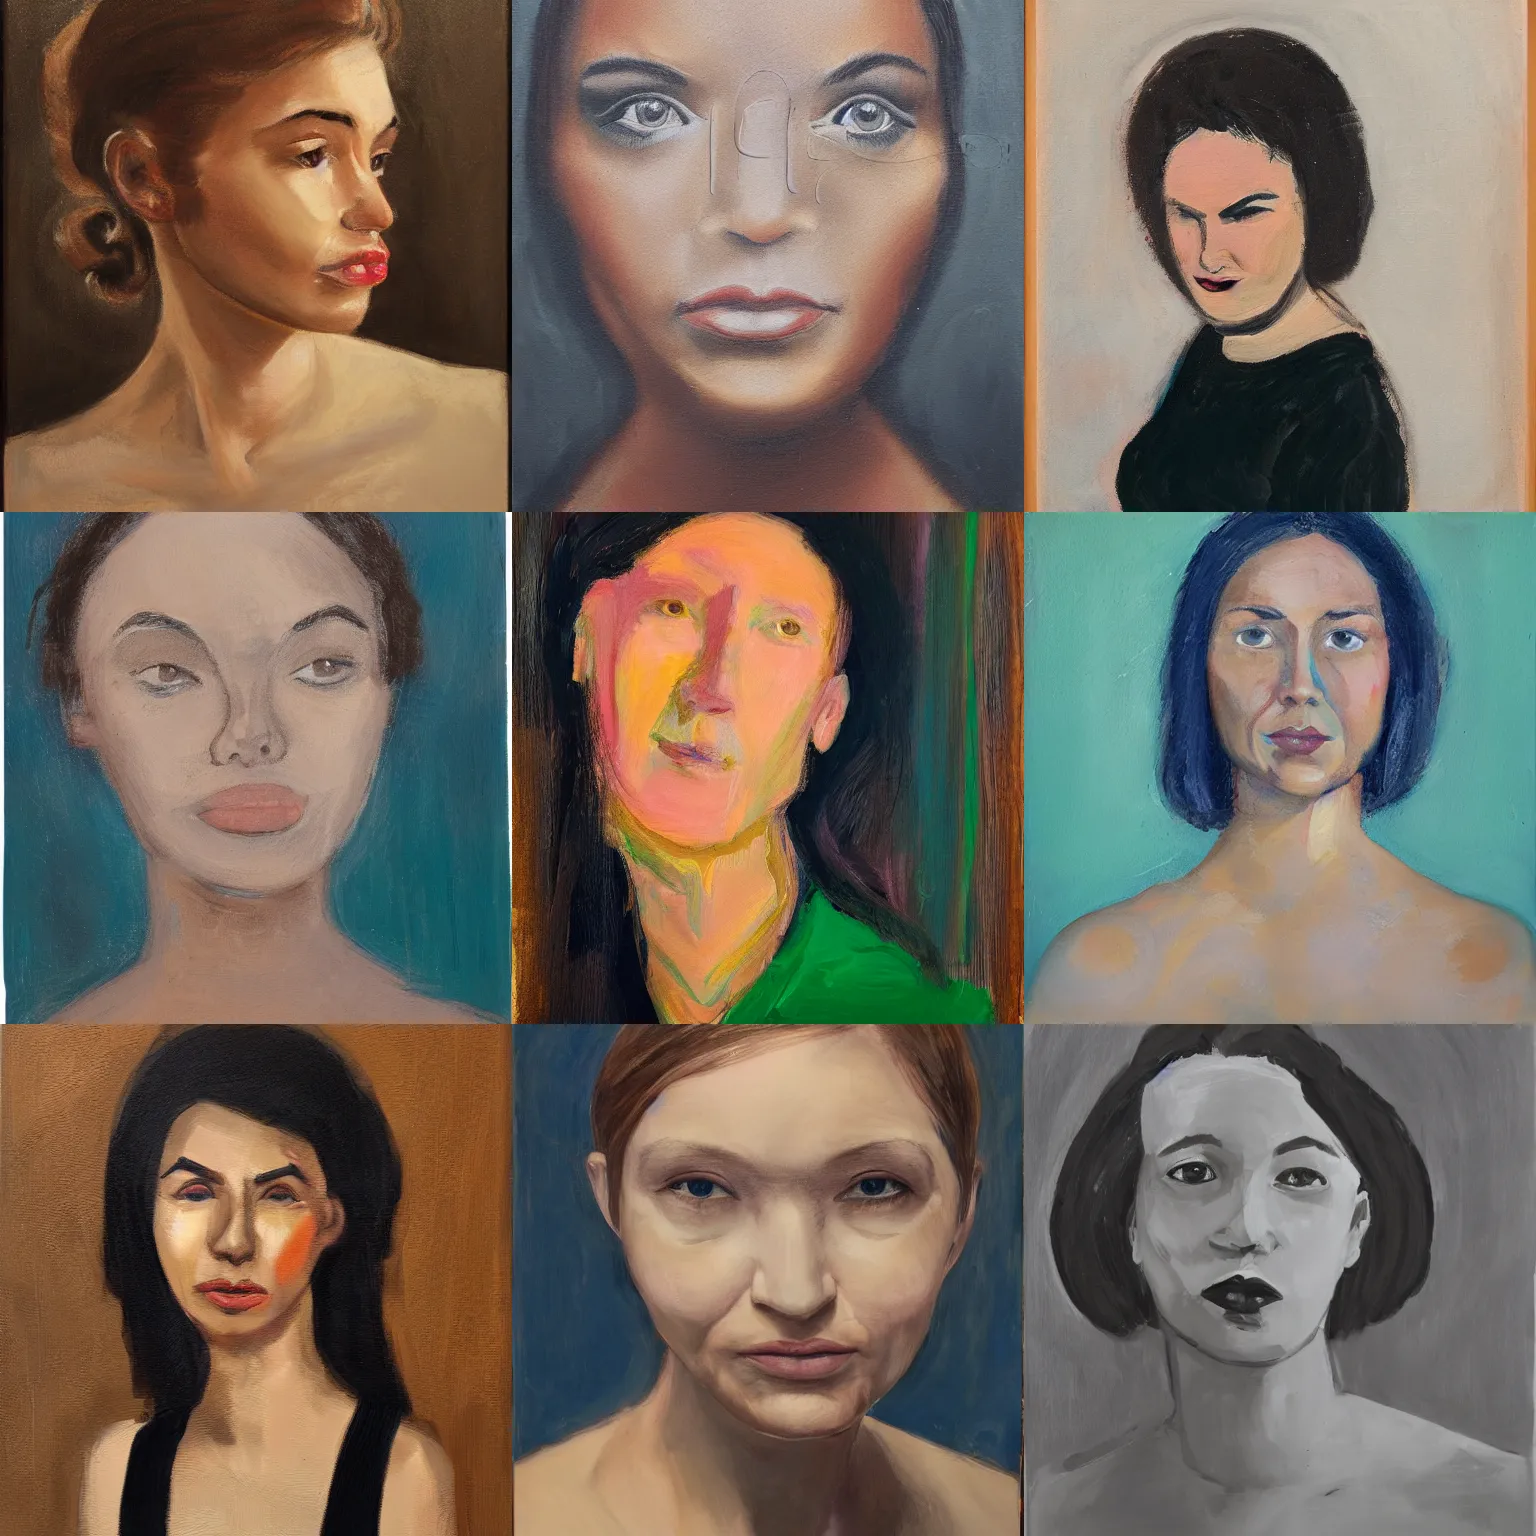 Prompt: woman, face, studio portrait